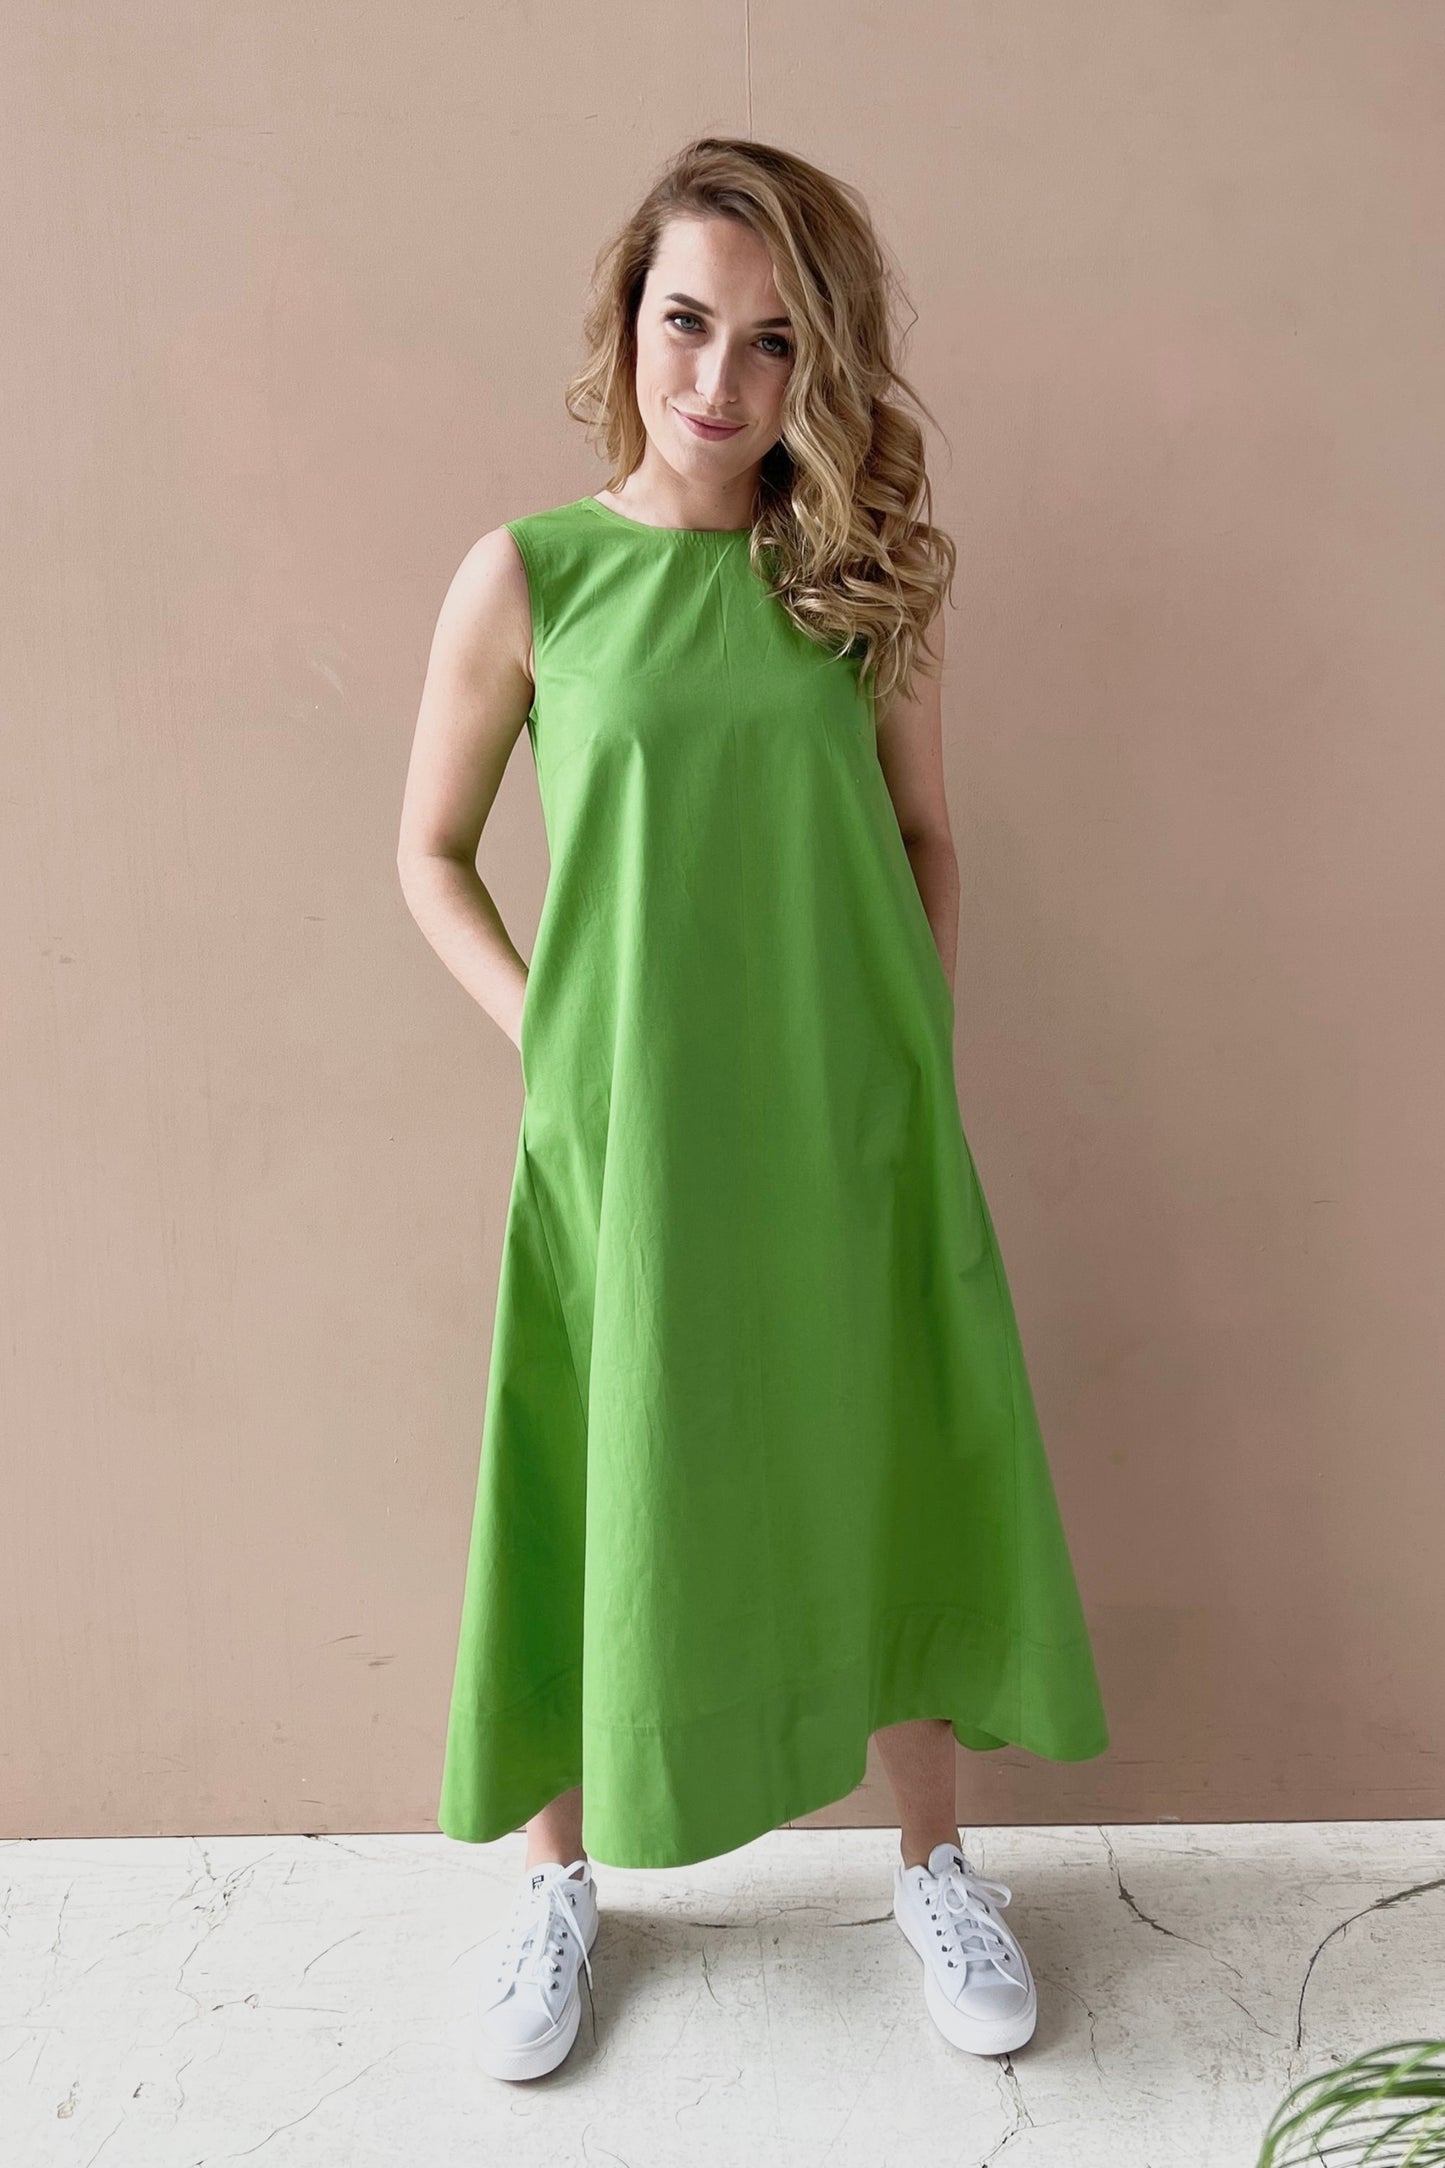 Zaļa zvanveida kleita ar kabatām